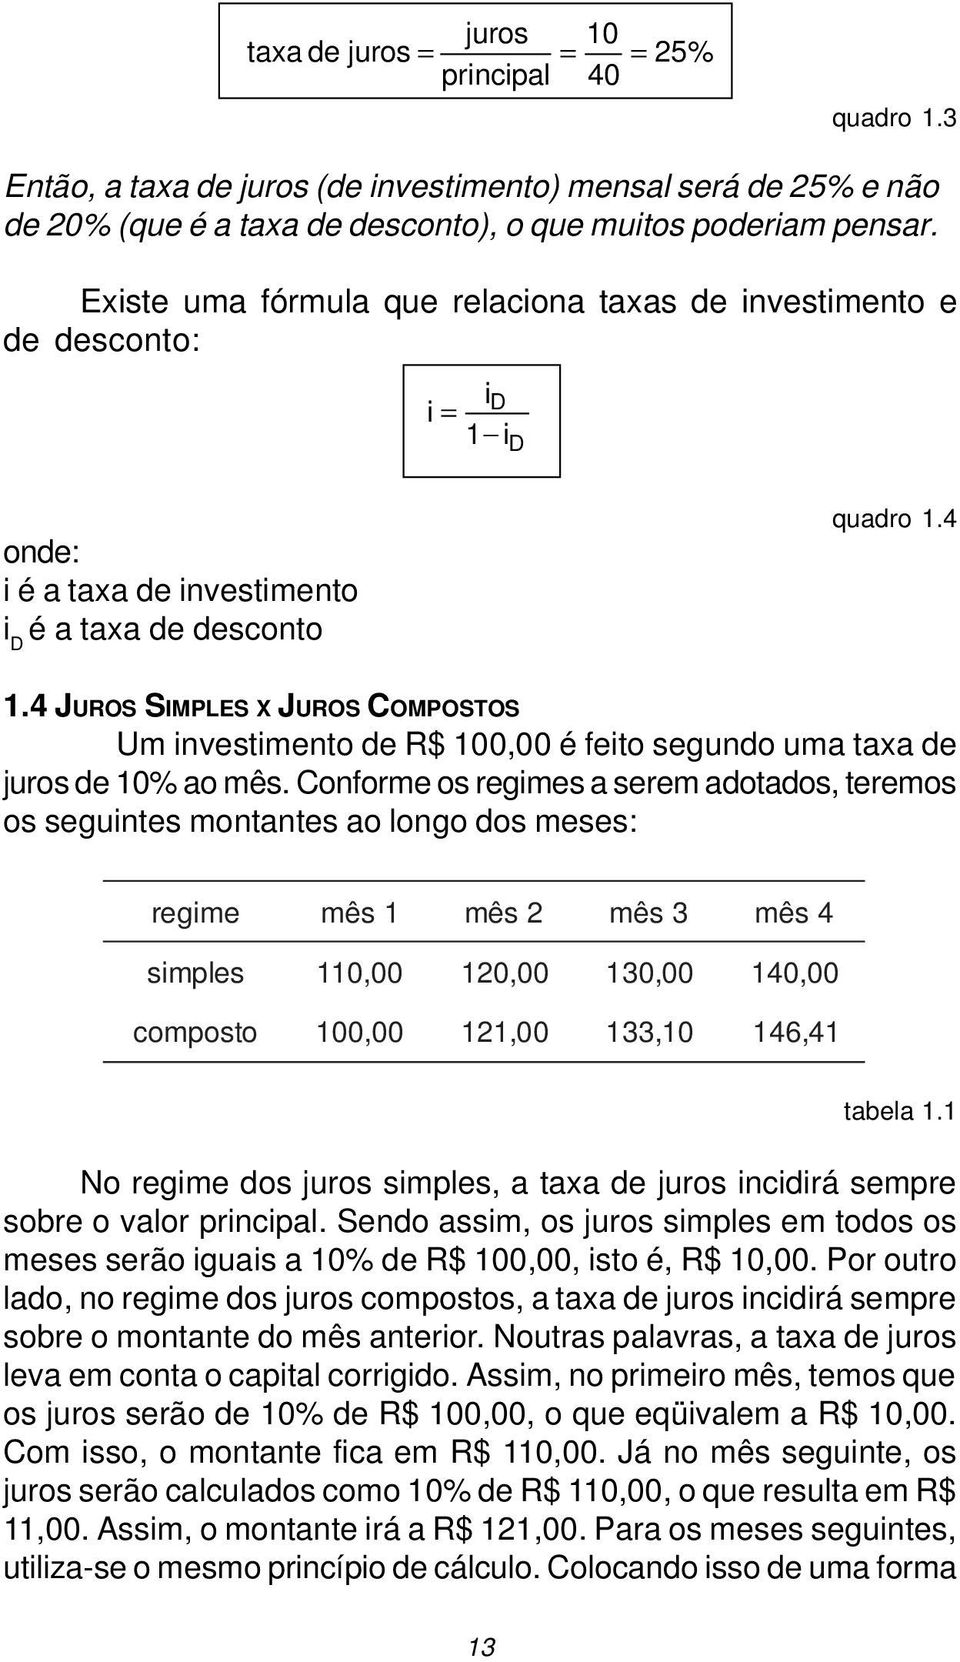 4 JUROS SIMPLES X JUROS COMPOSTOS Um investimento de R$ 100,00 é feito segundo uma taxa de juros de 10% ao mês.